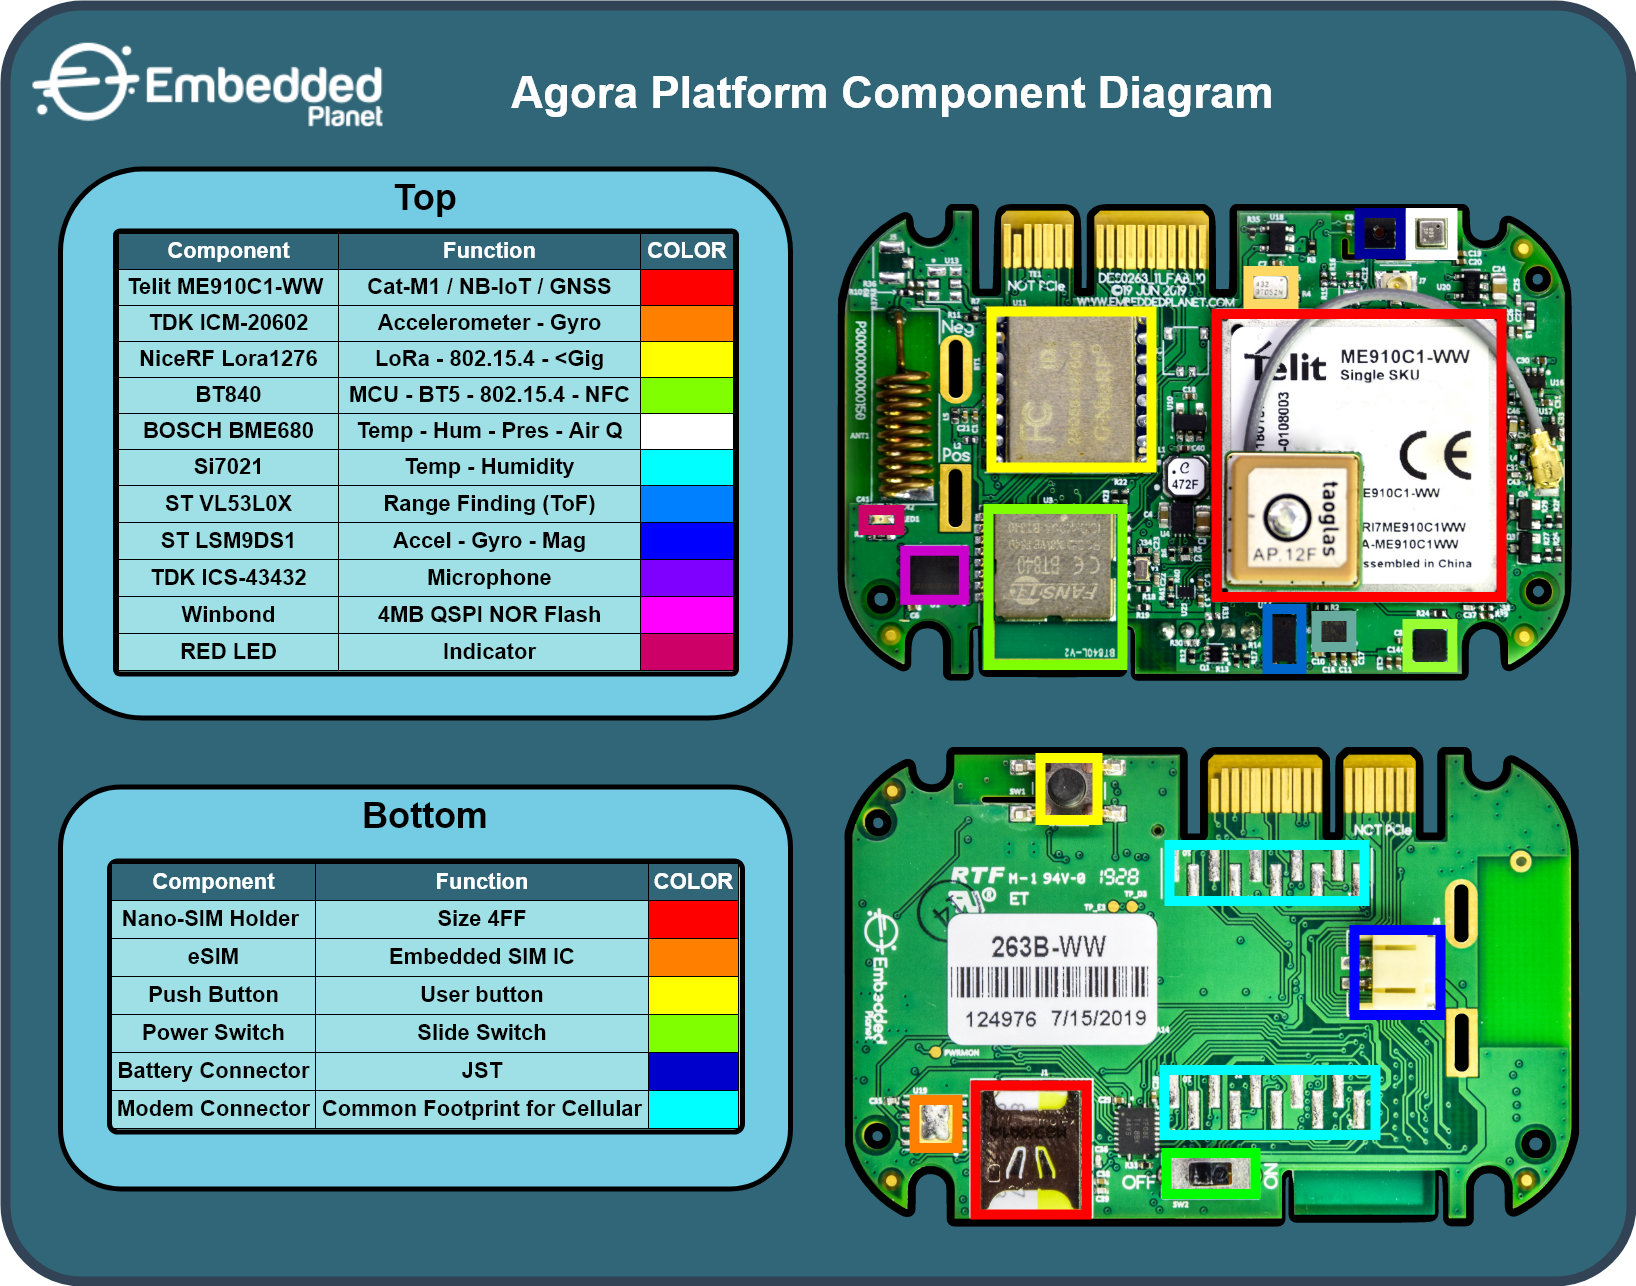 /media/uploads/loverdeg/agora-component-diagram_DDkQOdo.png